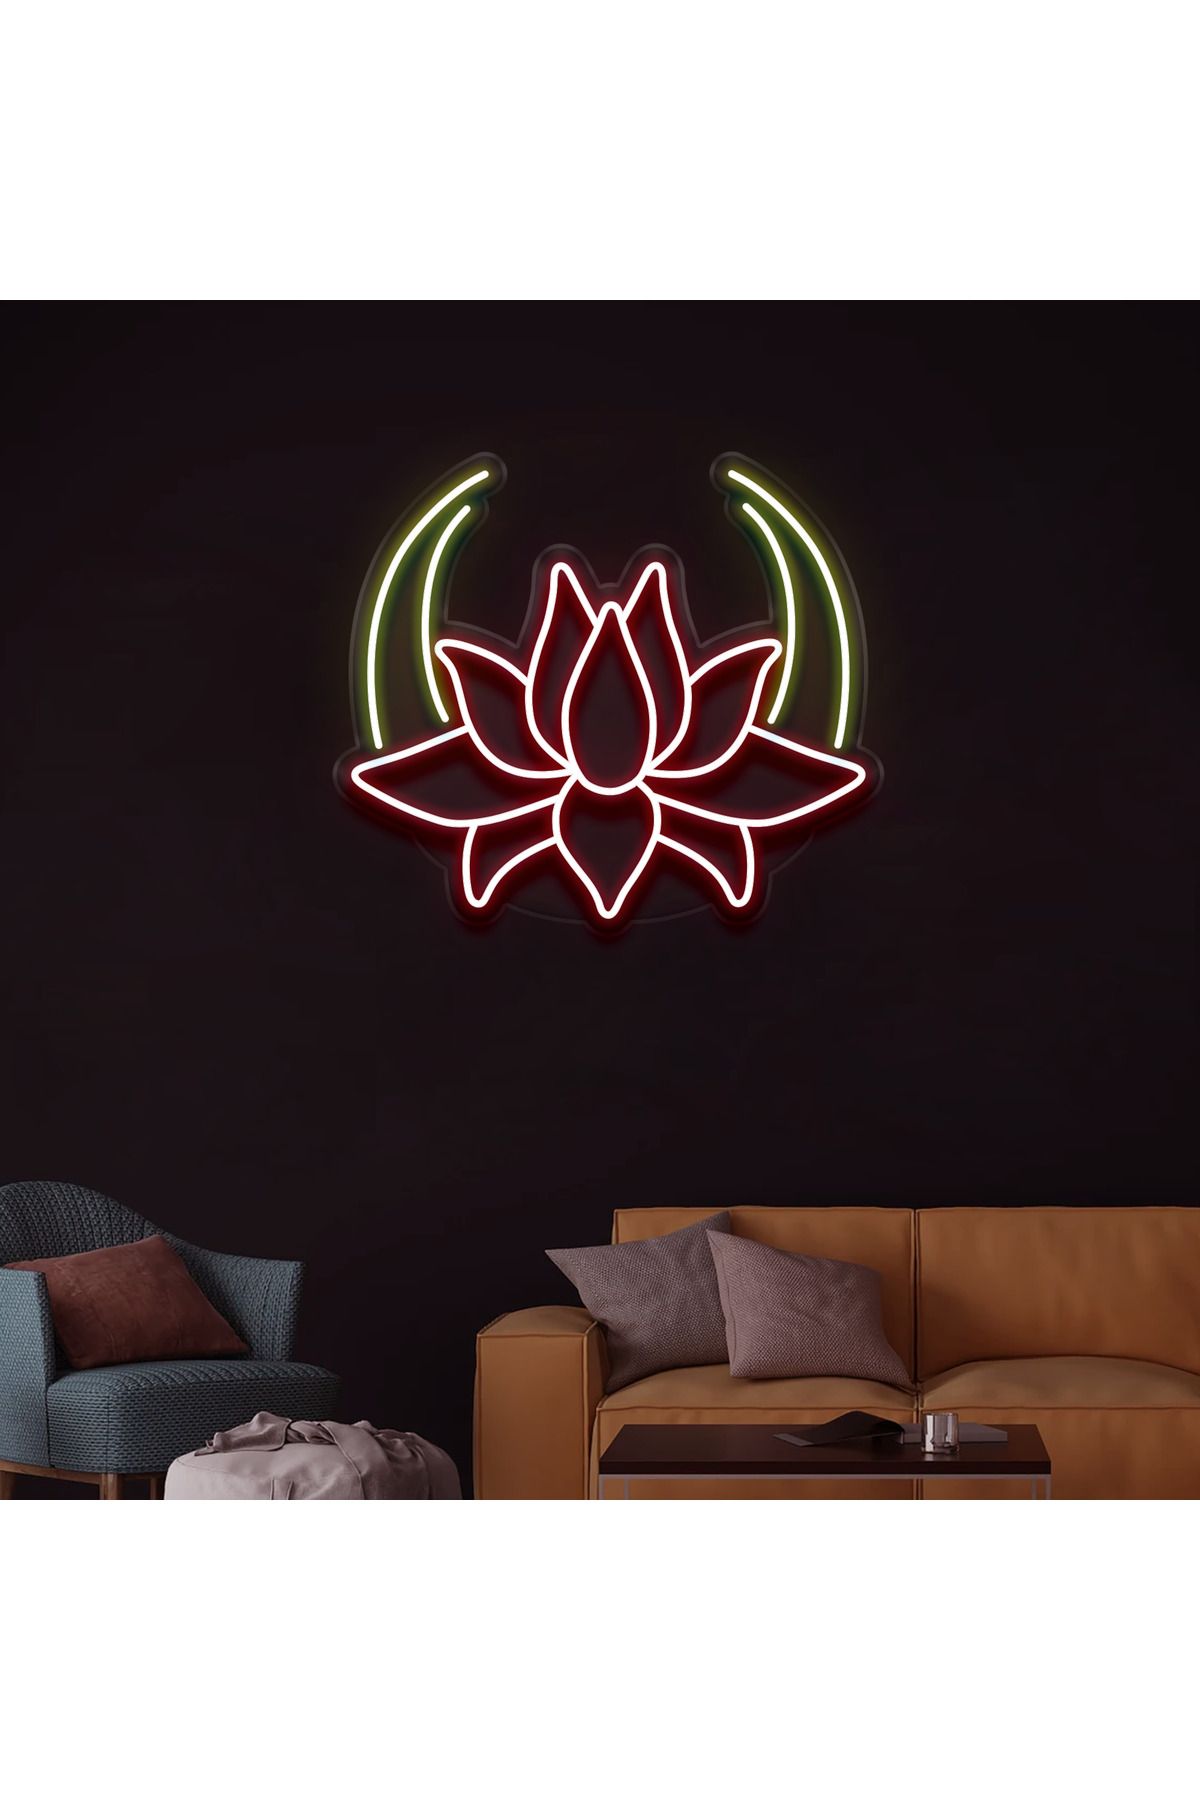 cnckoleksiyon Lotus Çiçek Neon Tabela  - Led Dekoratif Duvar Aydınlatması - 5mm Şeffaf Pleksi Malzemesi